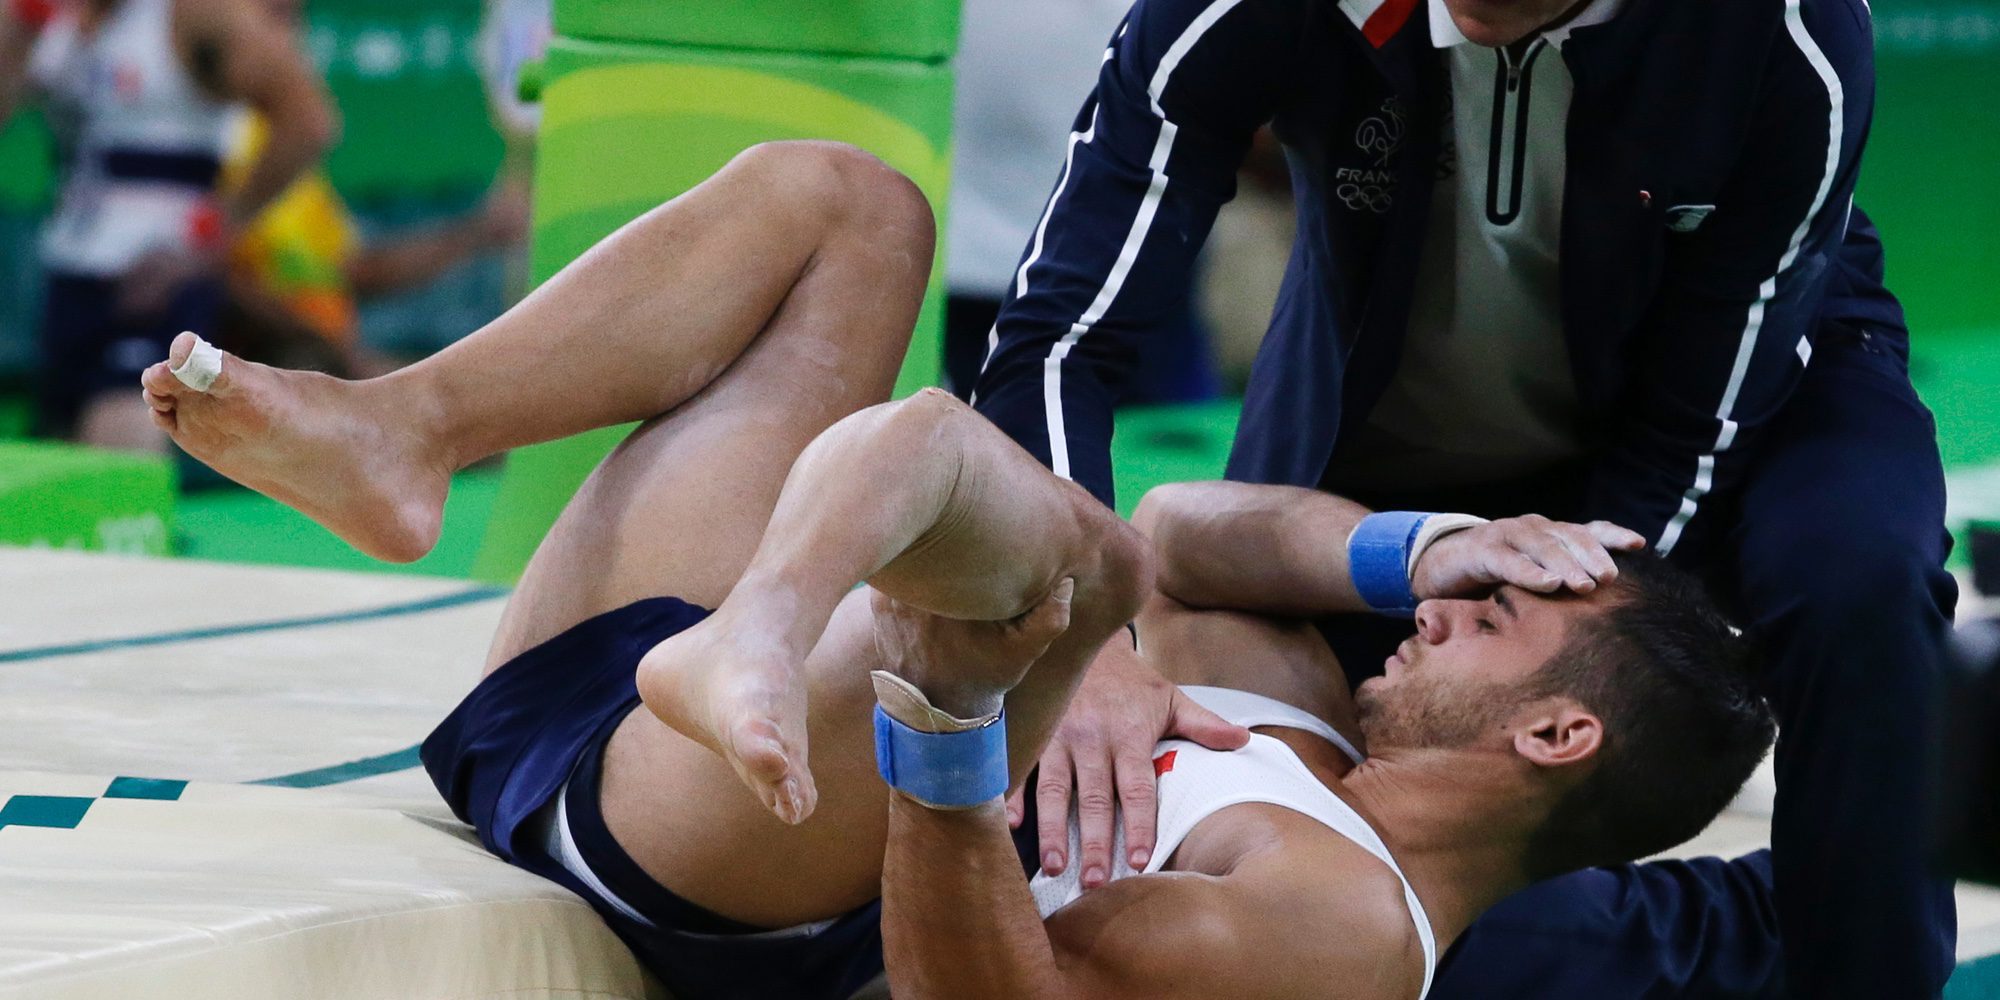 La terrible fractura de pierna del gimnasta francés Samir Aid Said en los Juegos Olímpicos de Río 2016